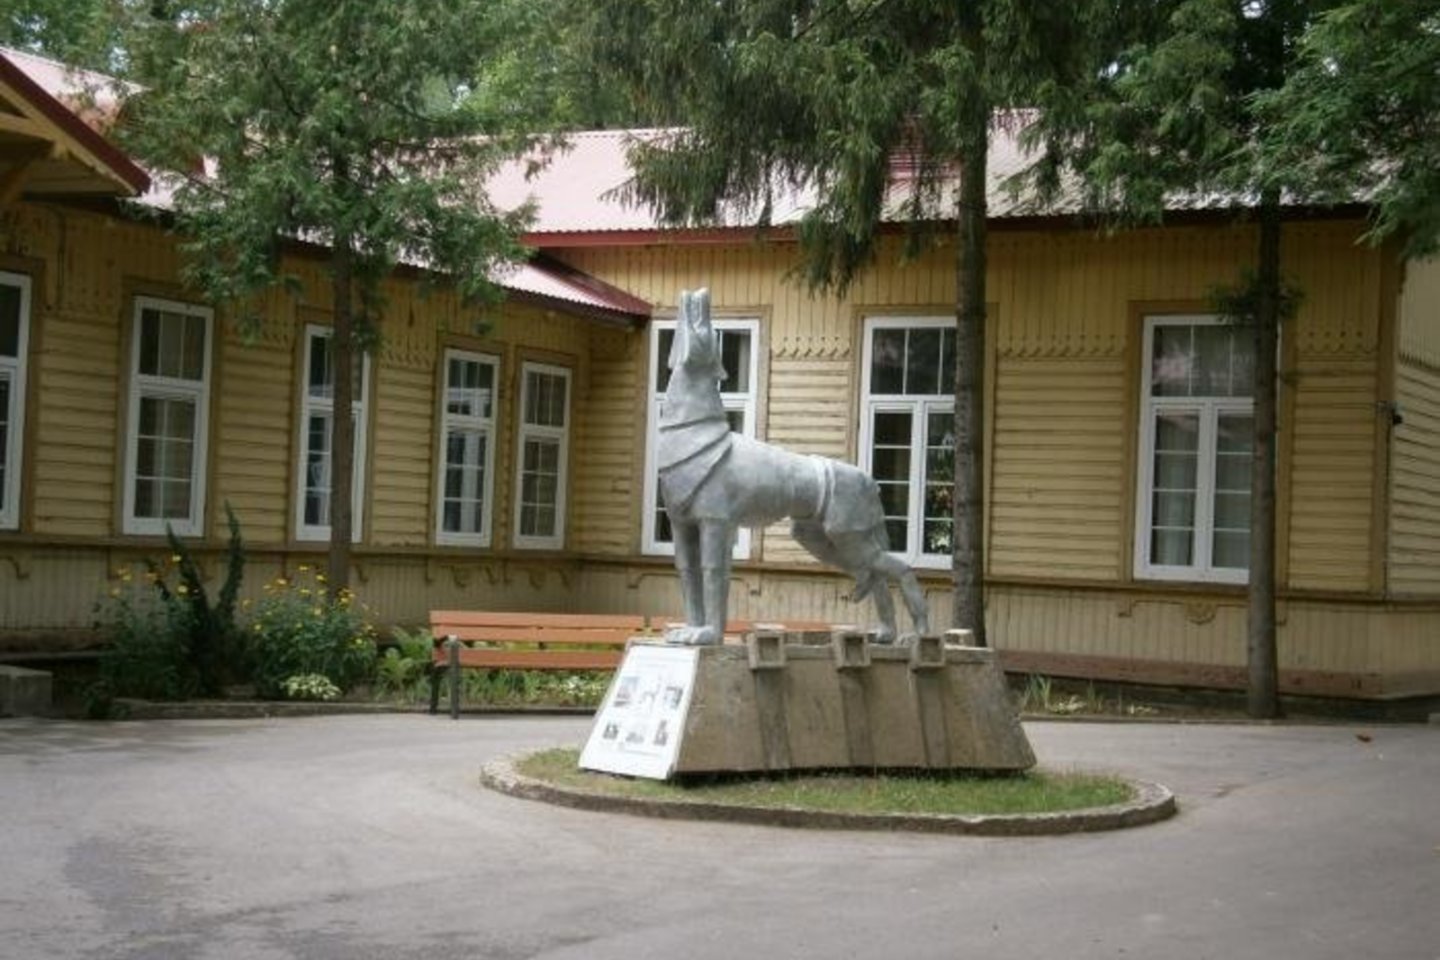  V.Poškos vilko skulptūrai teko neįprasta dalia.<br> Vikipedijos nuotr.